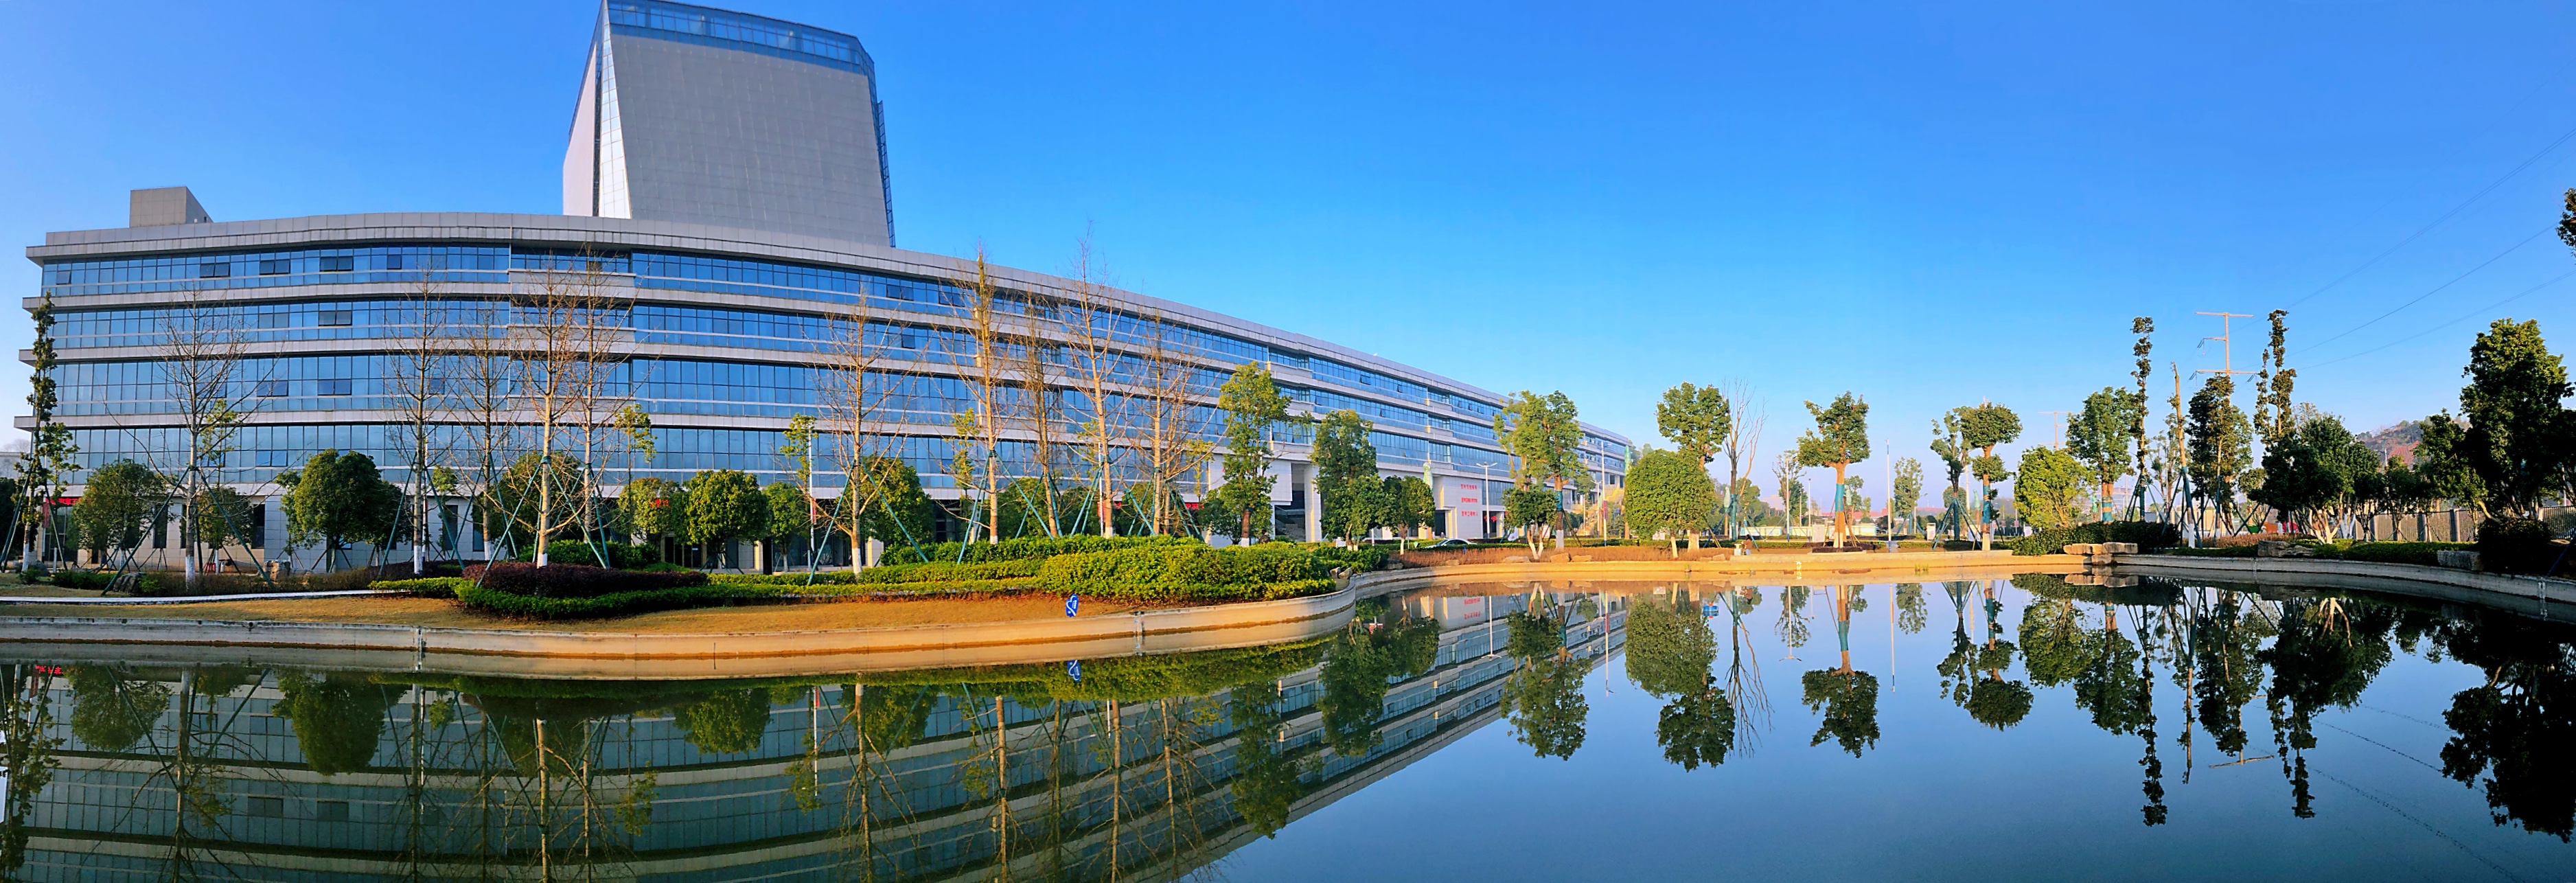 中国高职院校竞争力排行榜发布湖南汽车工程职业学院排名创新高